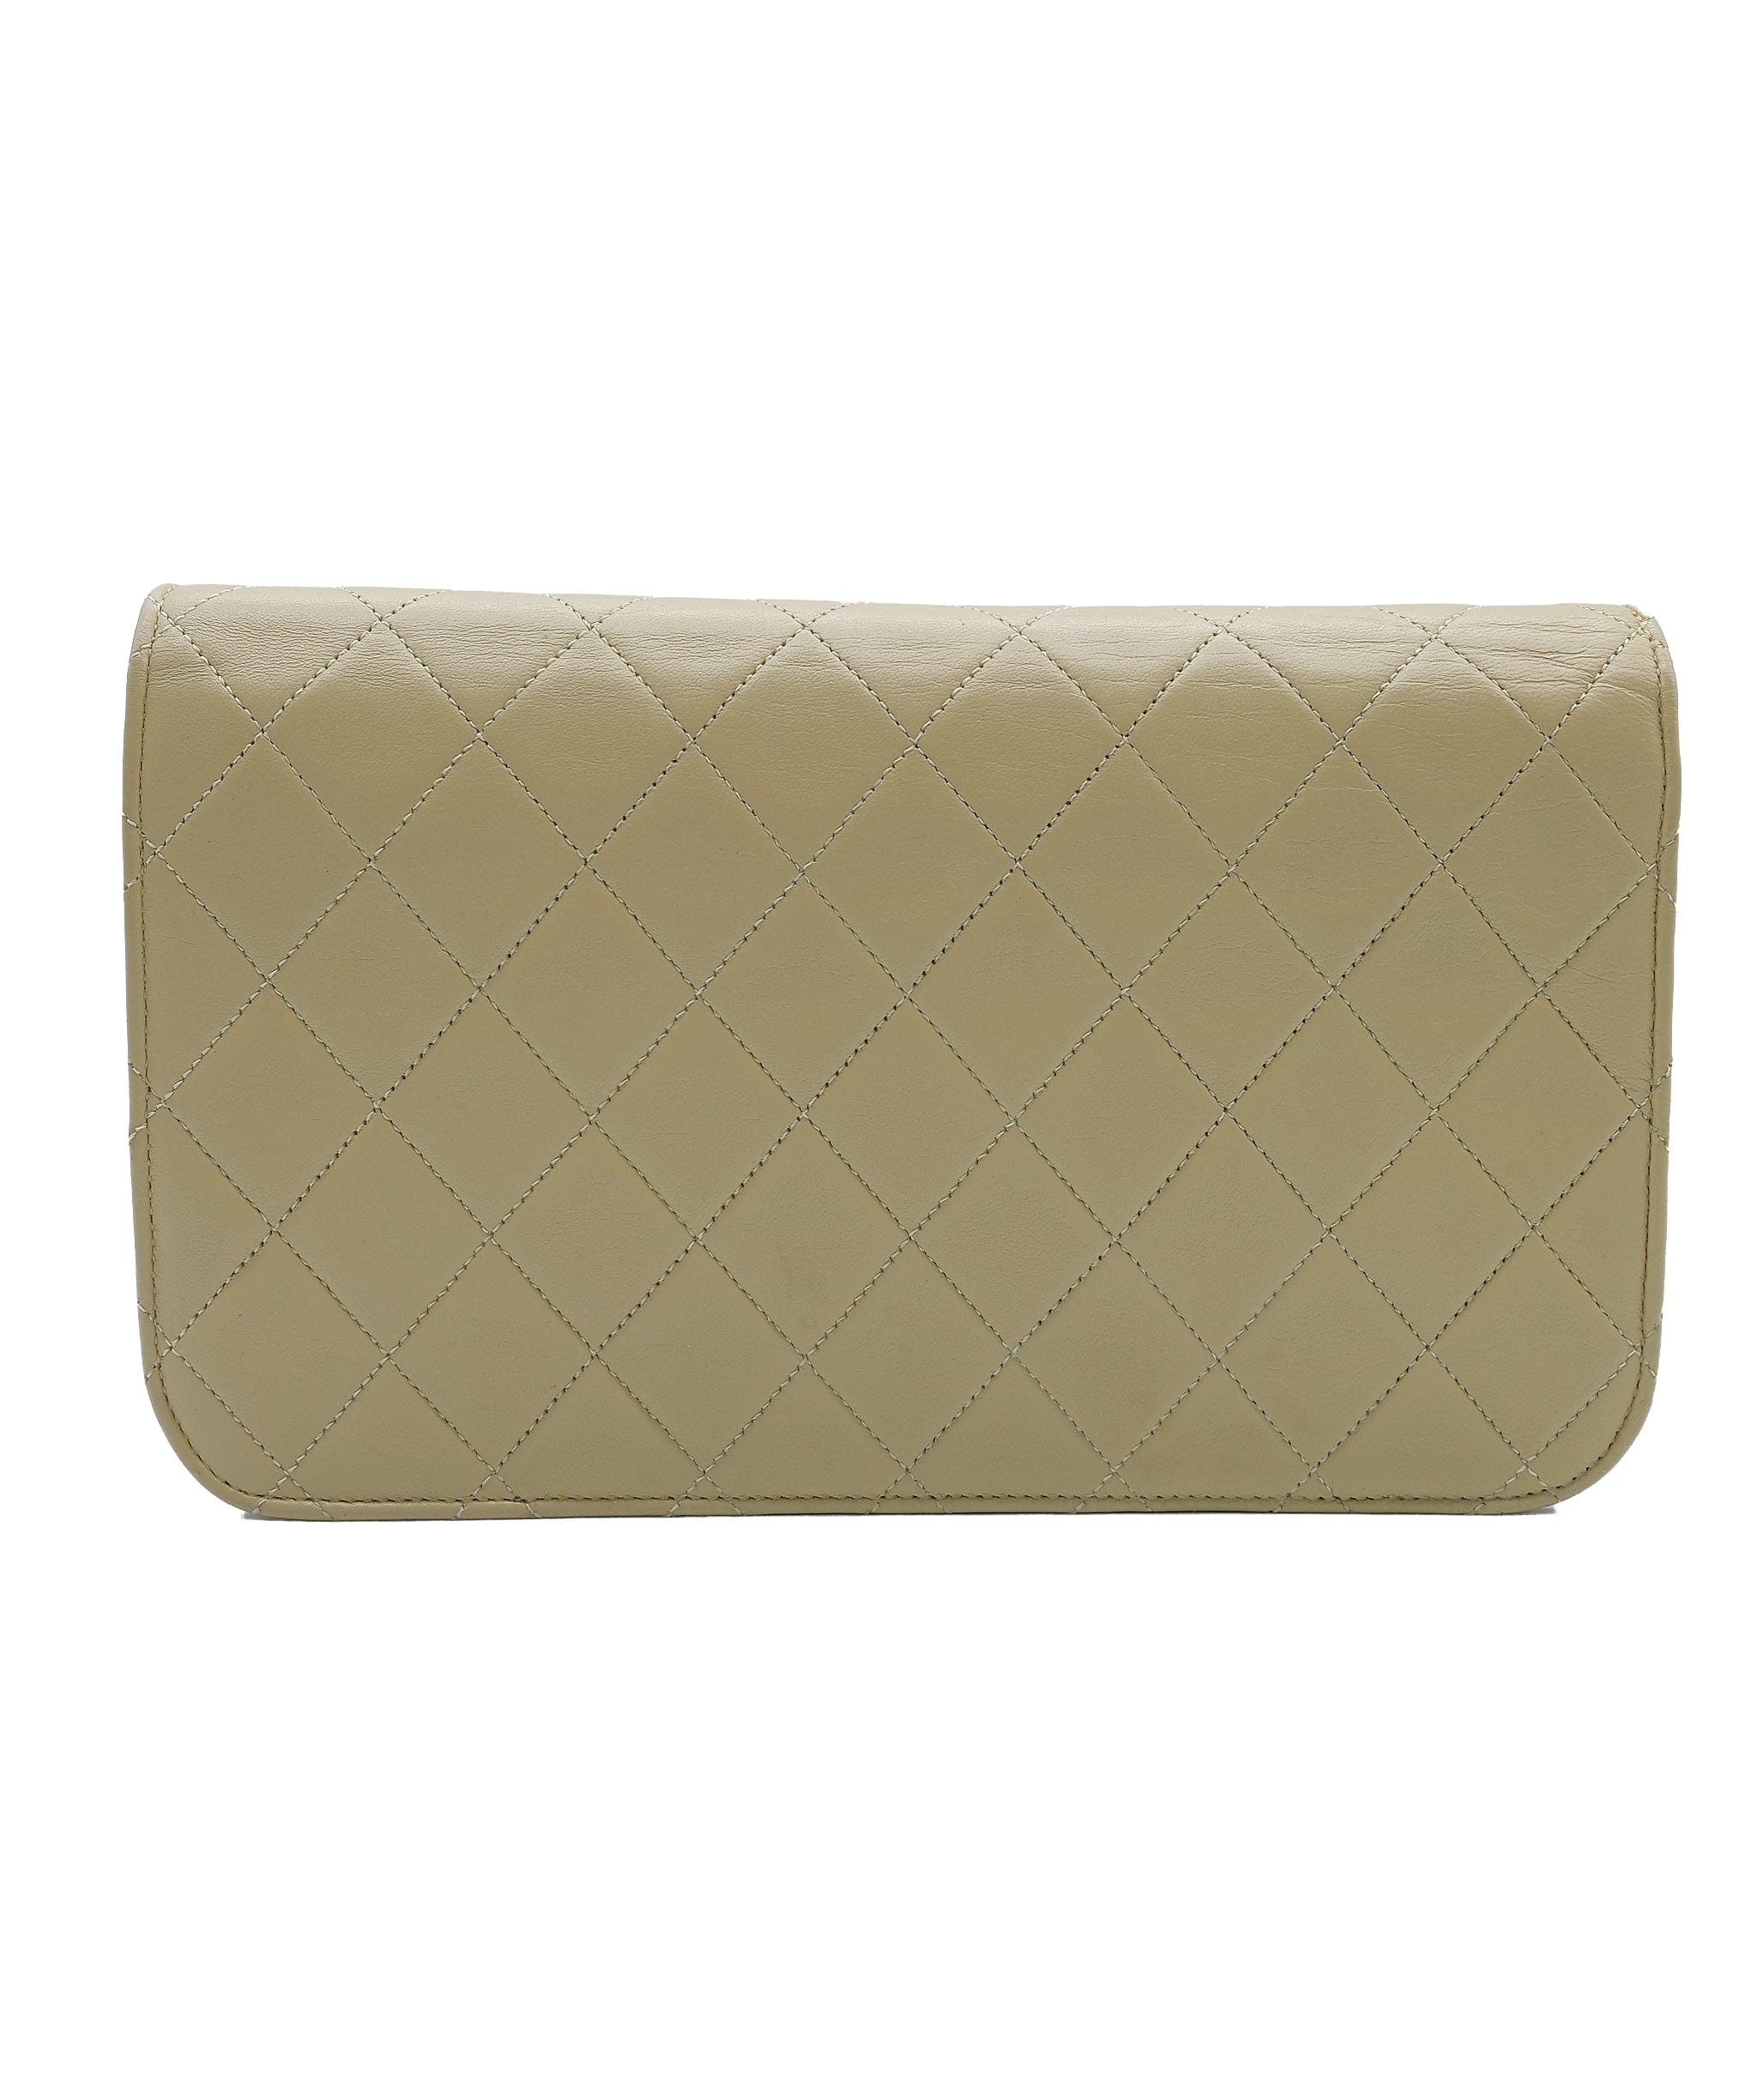 Chanel Chanel Matelasse Chain Shoulder Bag Leather Beige 90181284 RJL1913